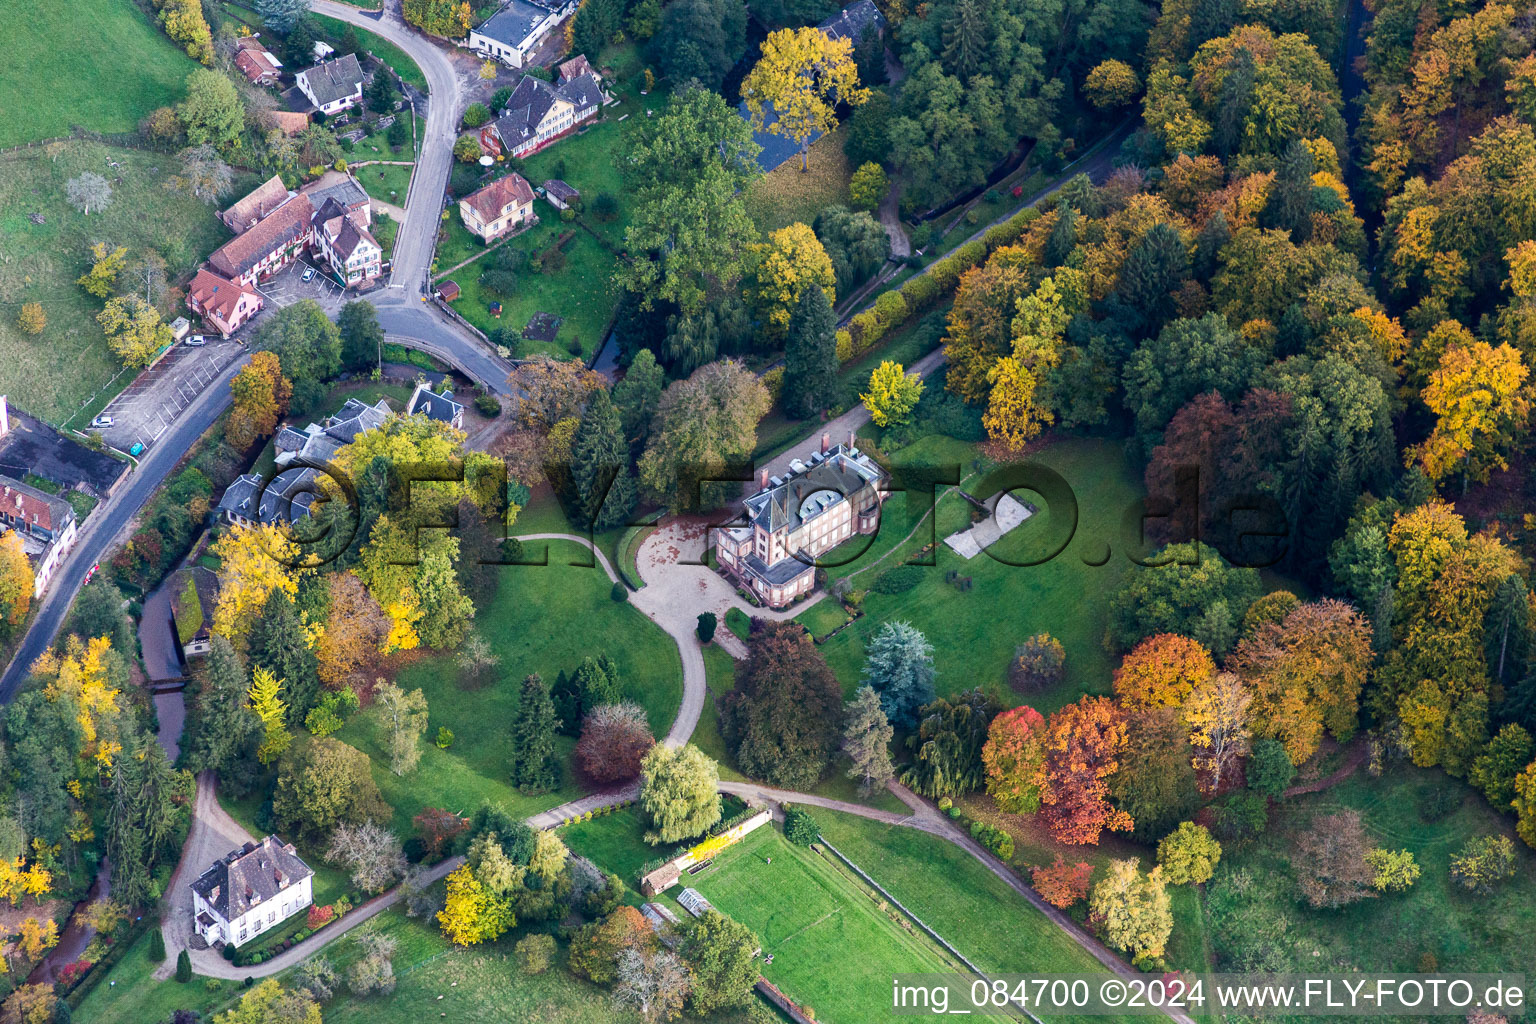 Luftbild von Hotelanlage der Domaine Jaegerthal in einem grünen Tal im Ortsteil Jaegerthal in Windstein in Grand Est im Bundesland Bas-Rhin, Frankreich